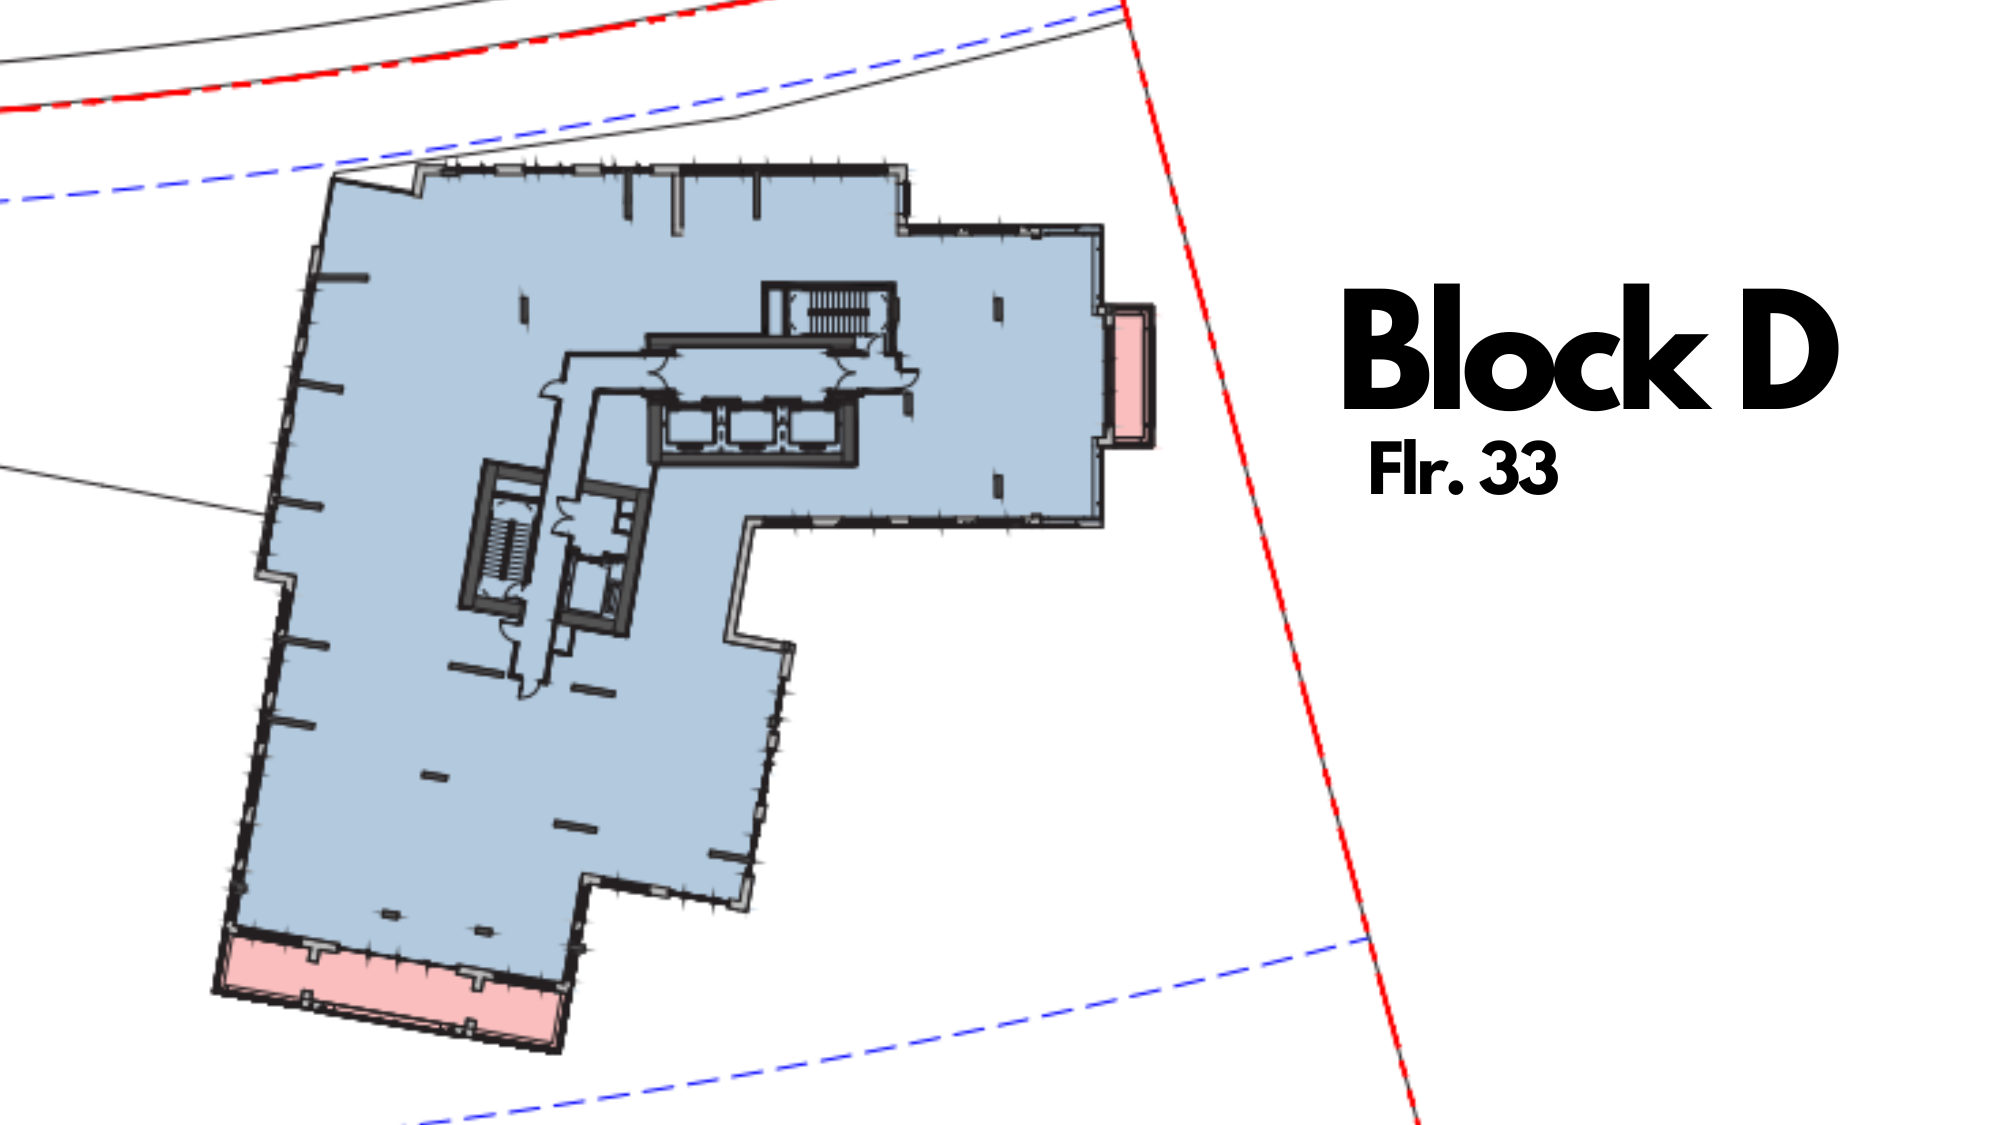 Block D Floor 33